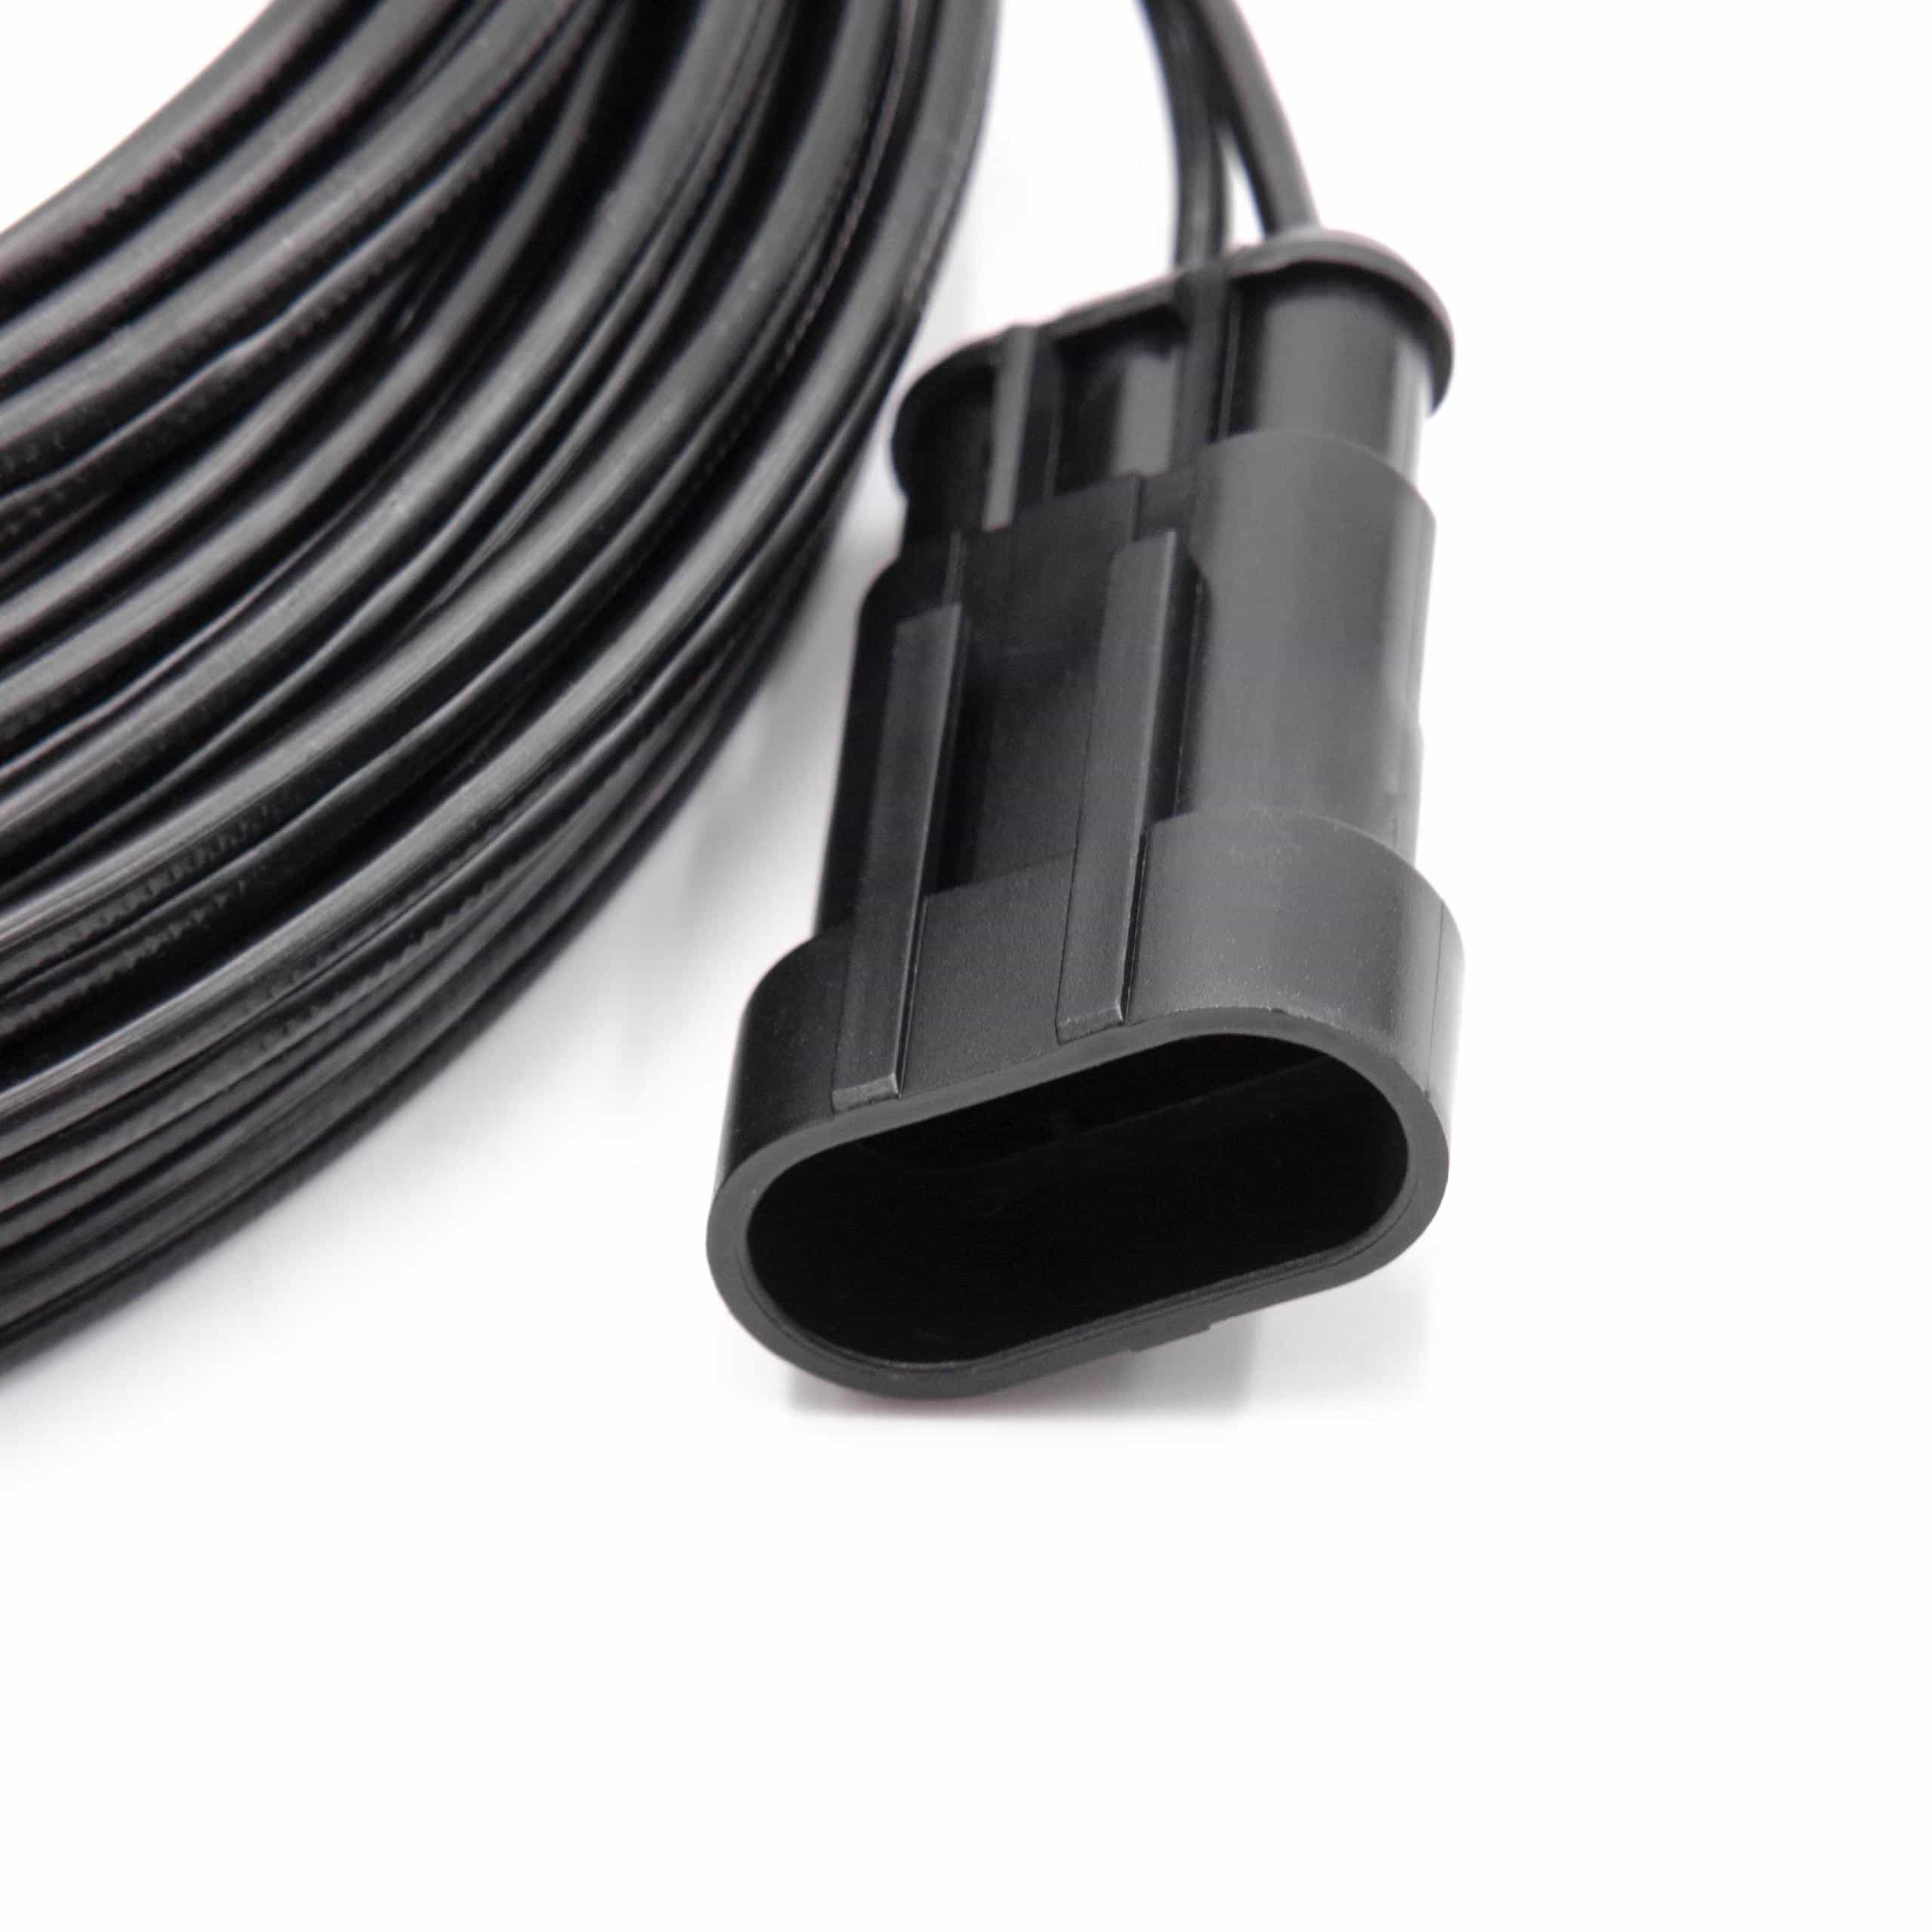 Câble de rechange pour Gardena 00057-98.251.01 pour robot tondeuse - Câble basse tension, 10 m